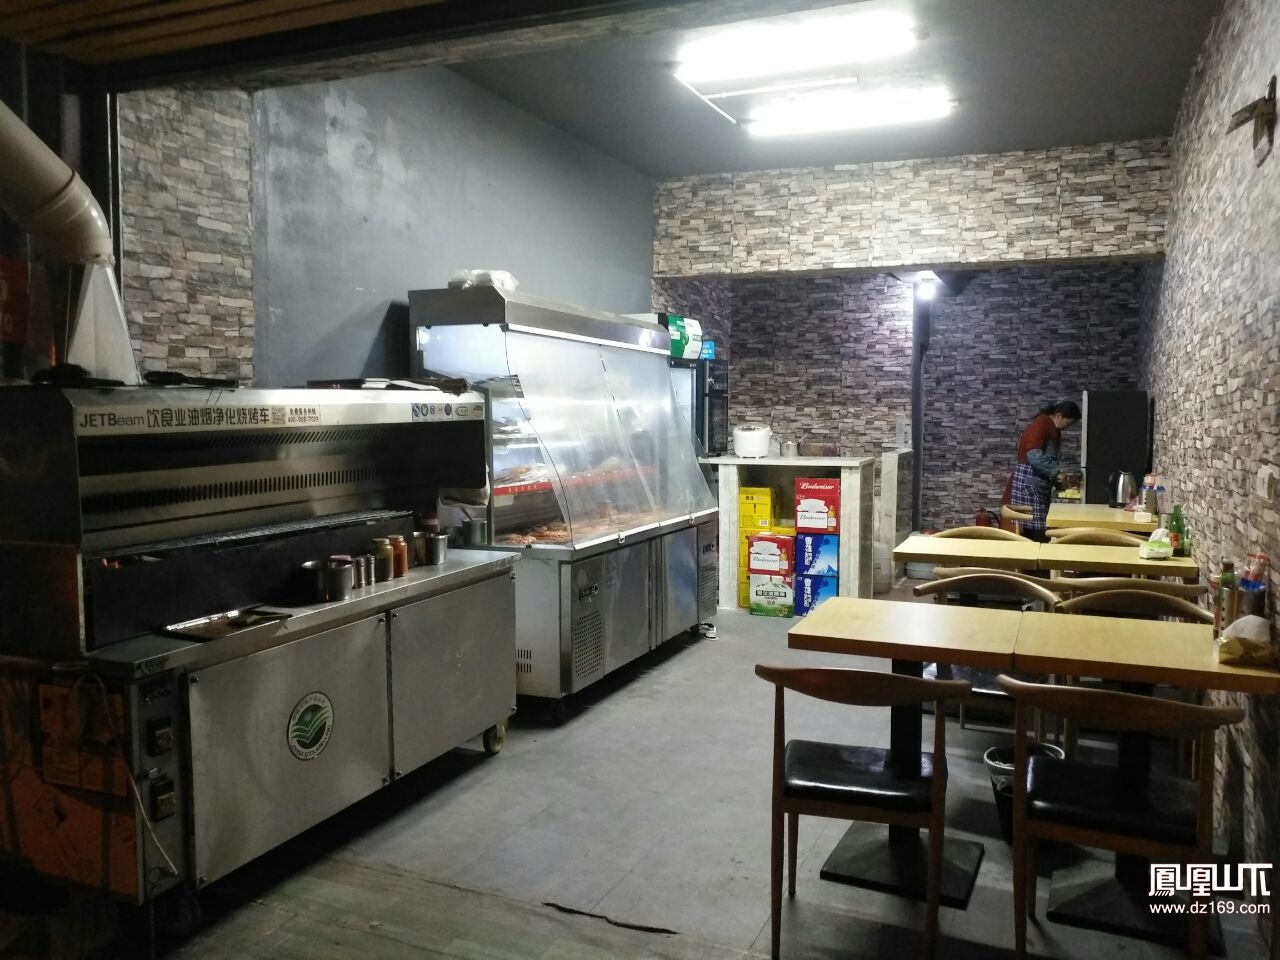 锦州国际二区烧烤店与楼上居民屡发冲突